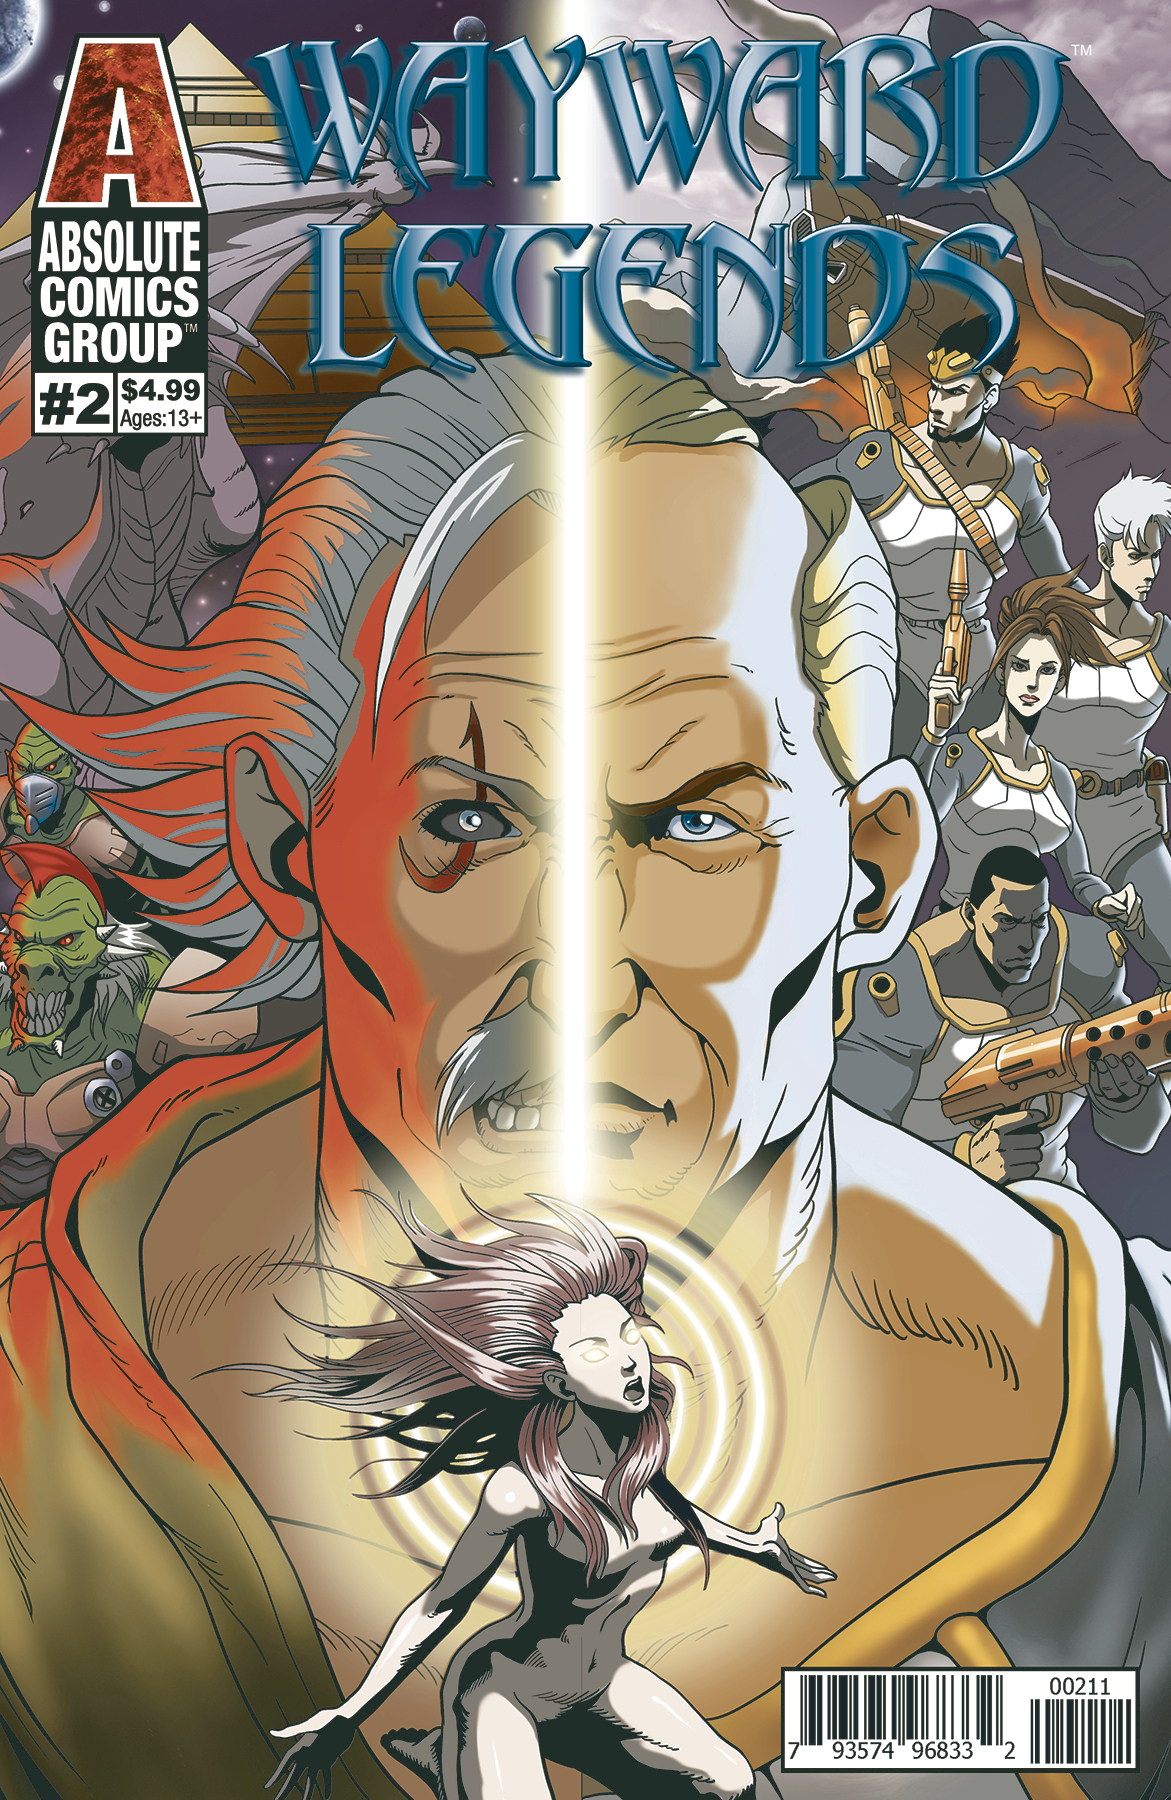 Wayward Legends #2 Cover A Yang